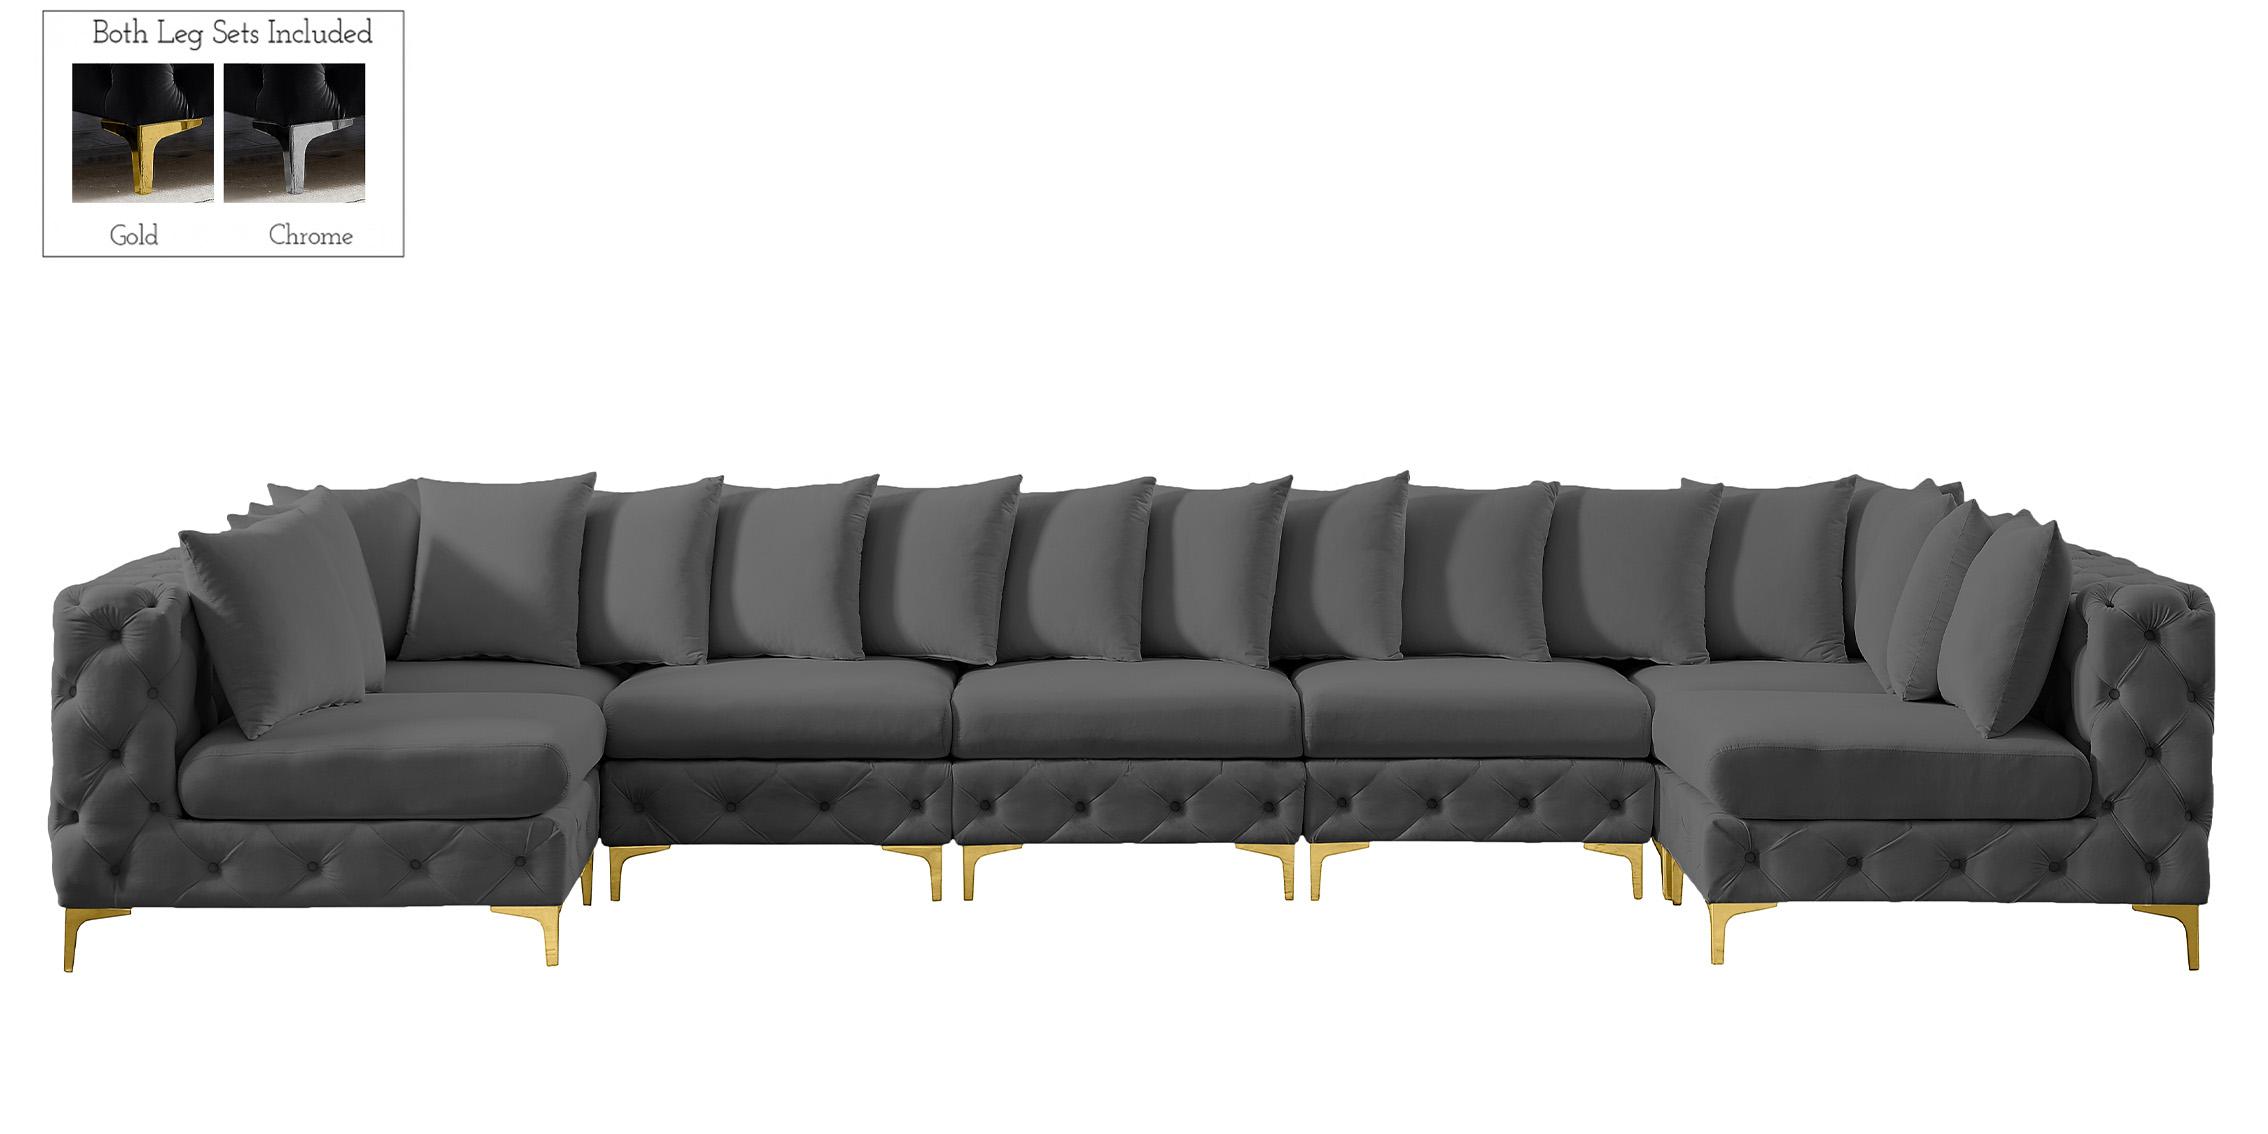 

    
686Grey-Sec7A Meridian Furniture Modular Sectional Sofa
